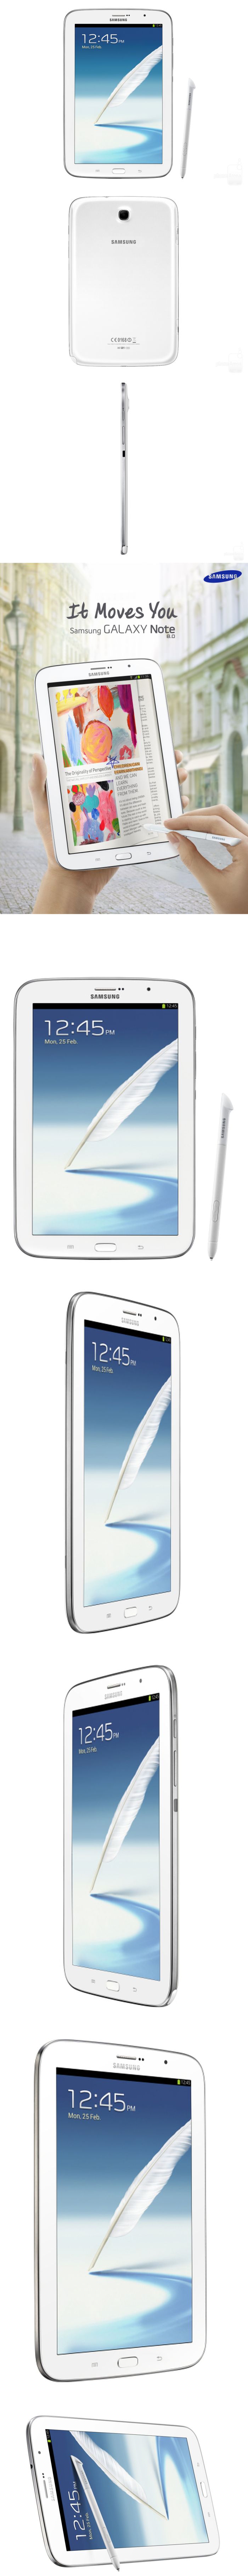 Egy nappal az MWC elõtt: megjelent a Samsung Galaxy Note 8.0